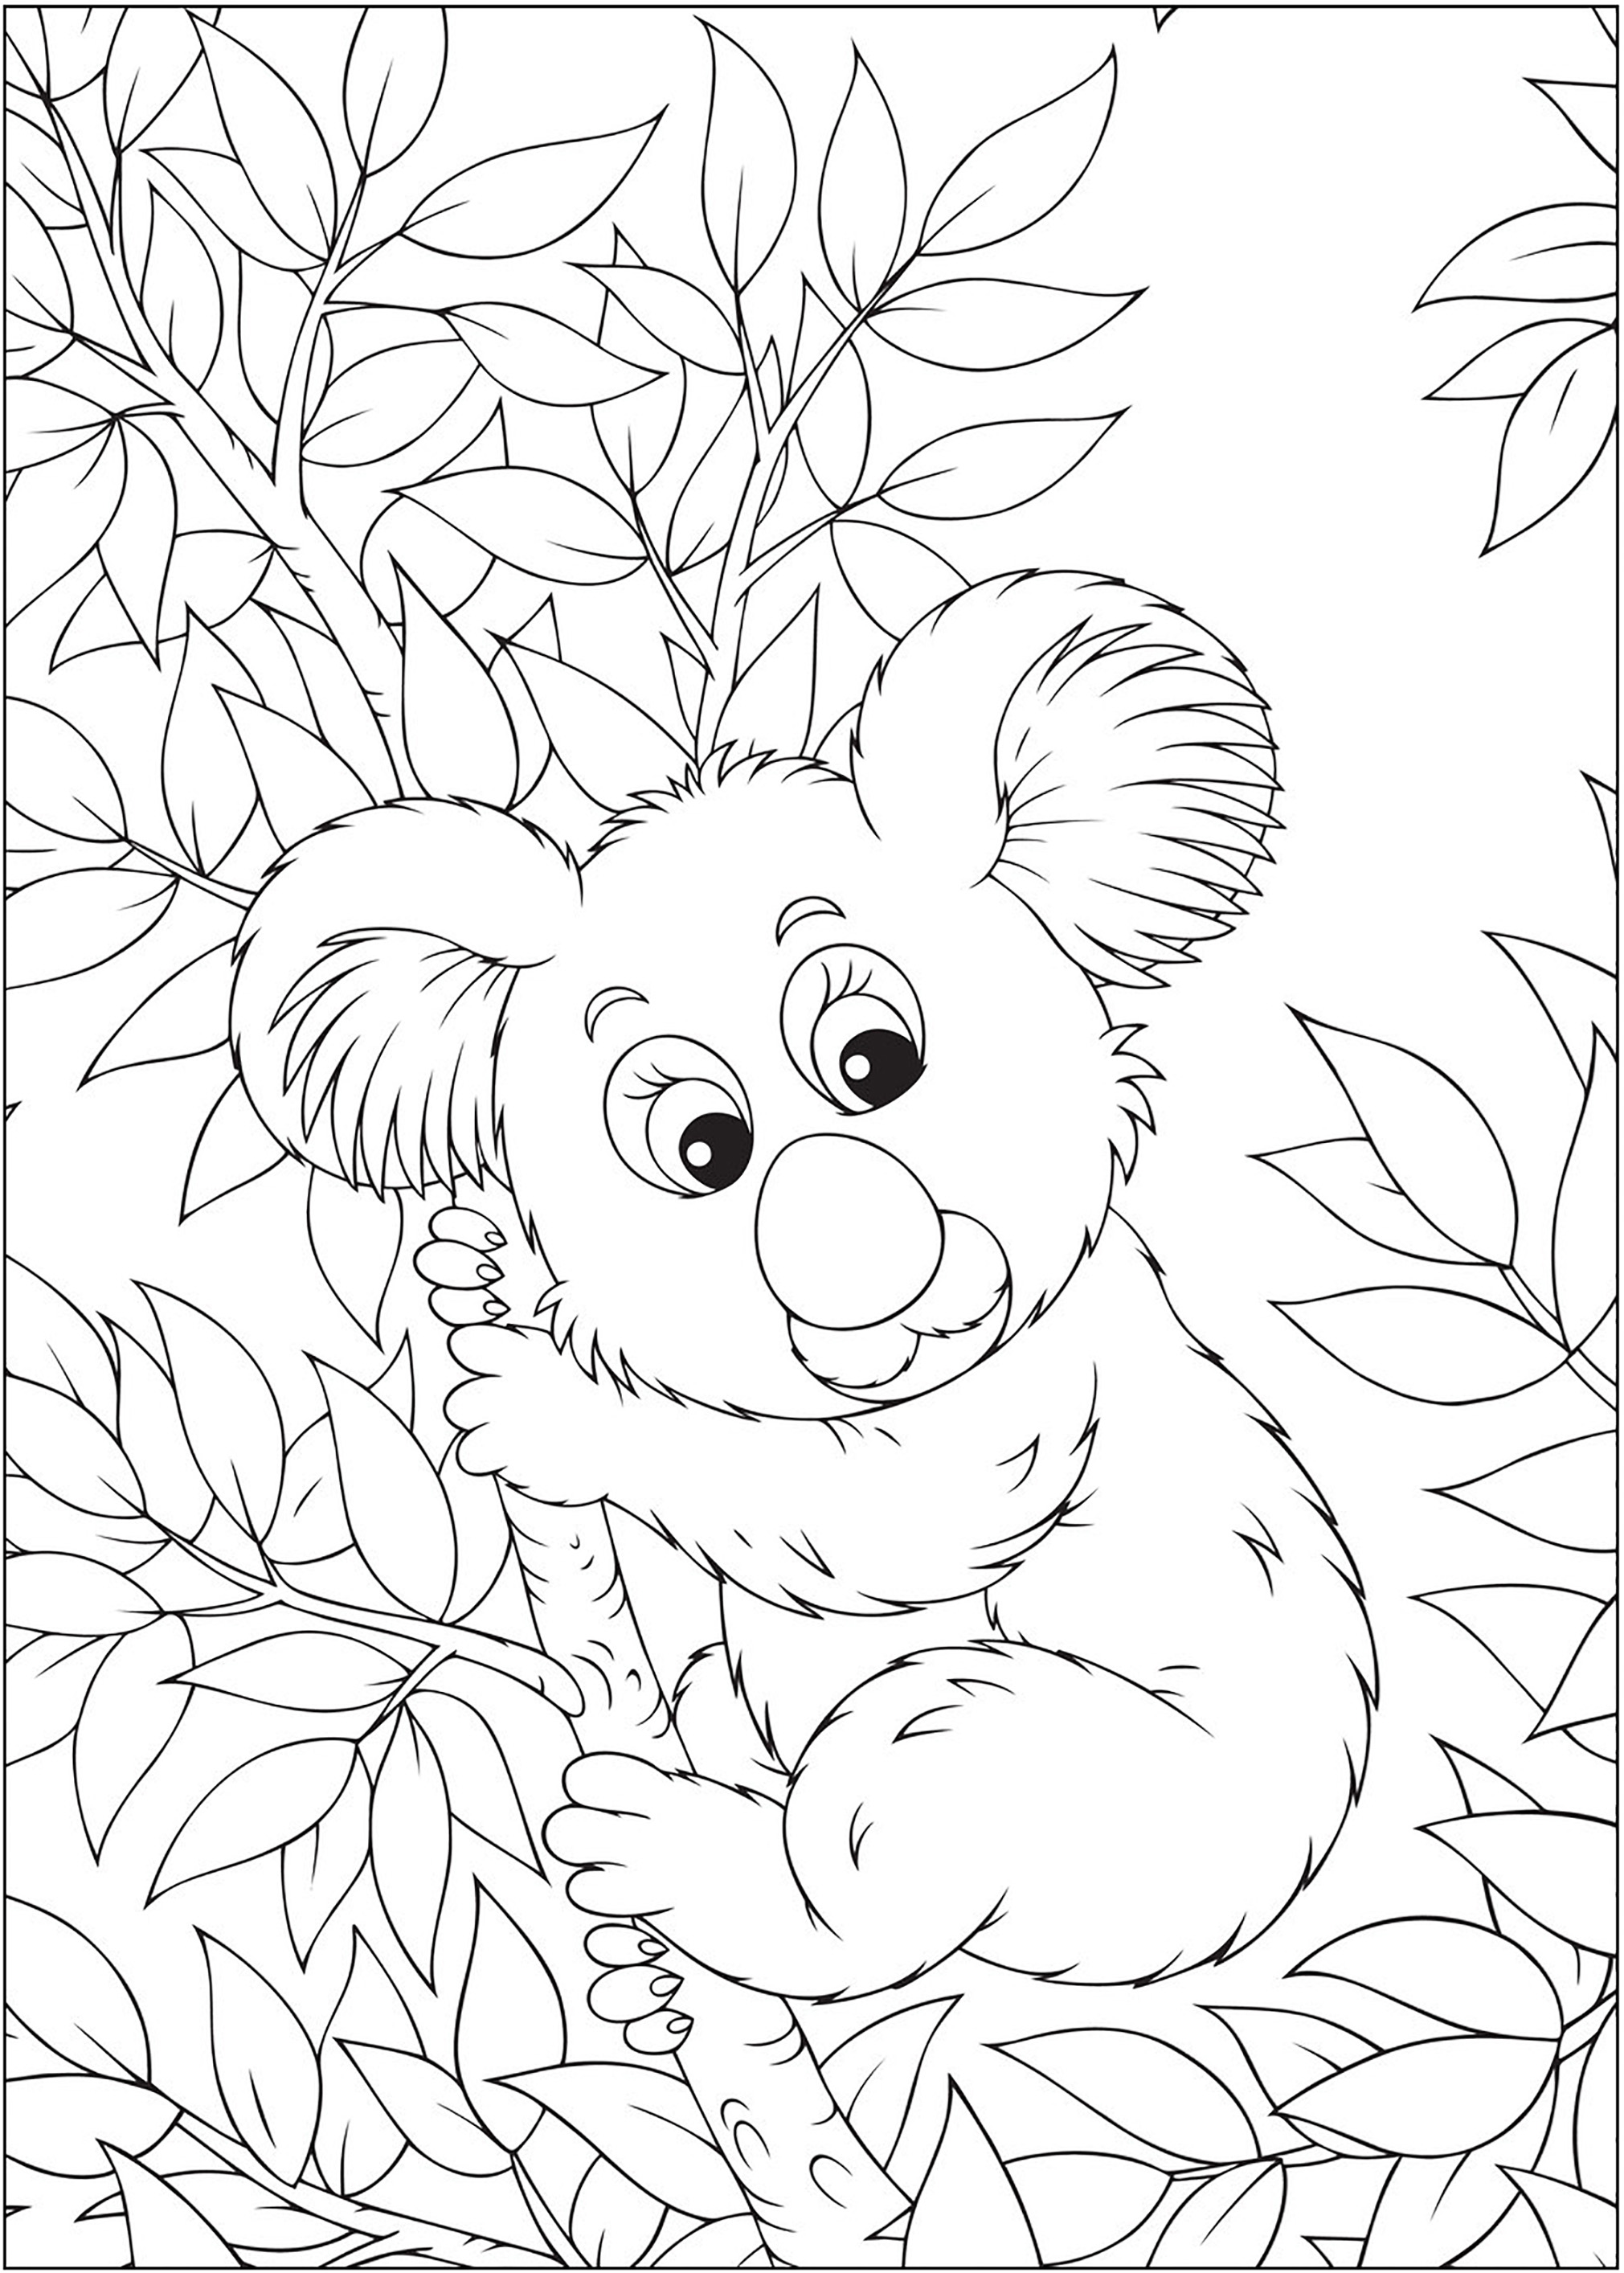 Simple Dibujos para colorear para niños gratis de Osos Koala